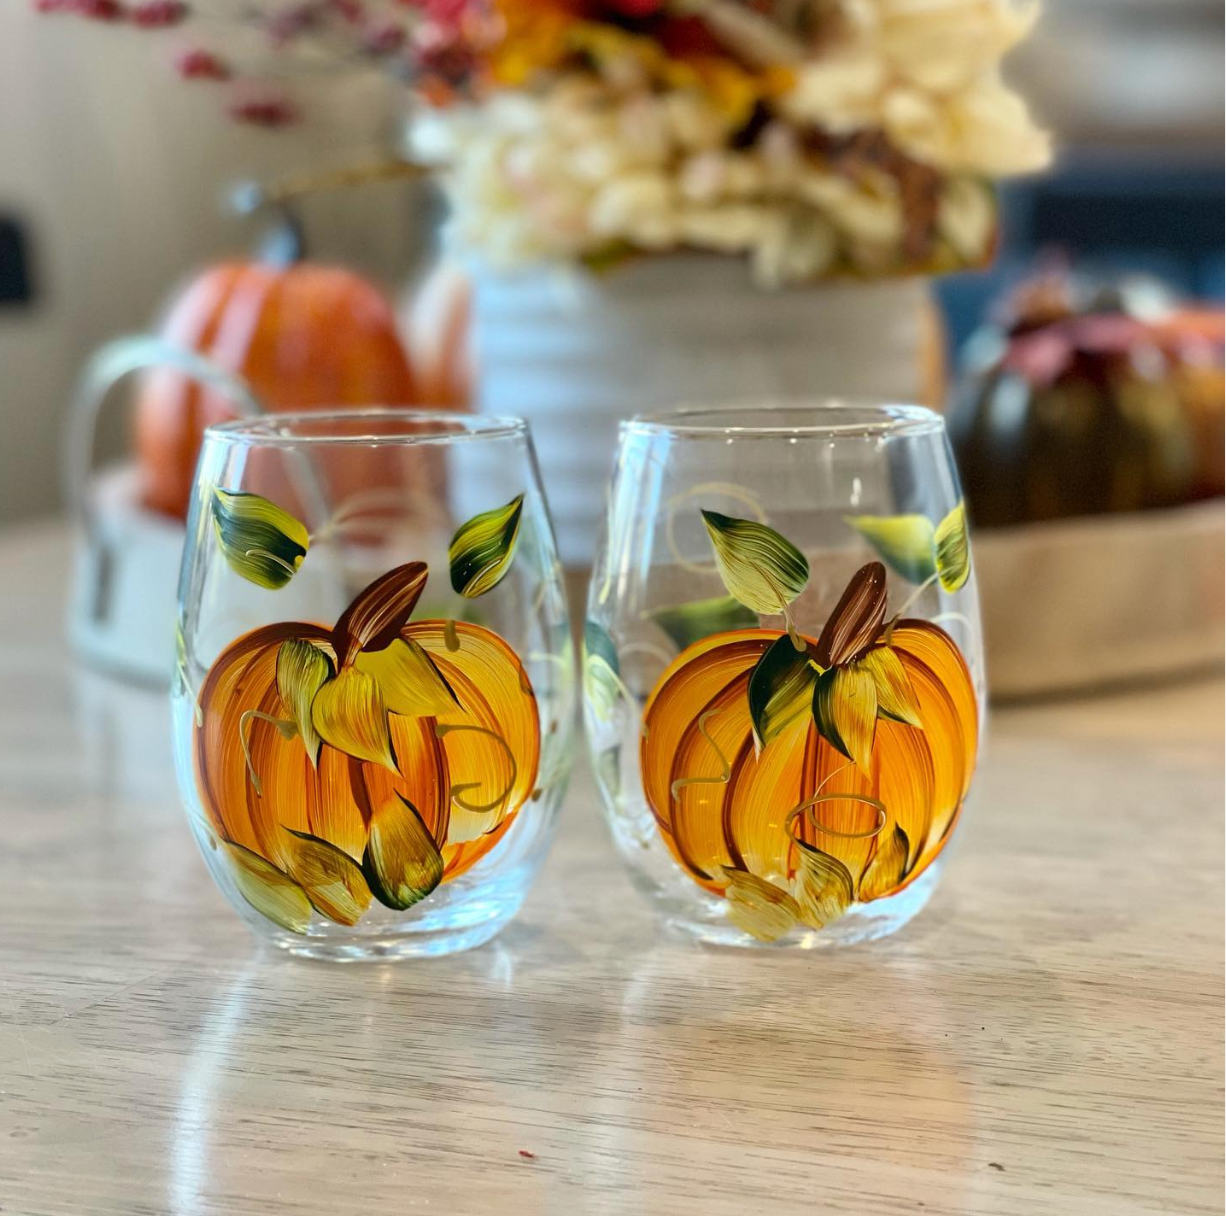 SAKEMA Hand Painted Art Stemmed Wine Glasses(Autumn,Stemmed glass)